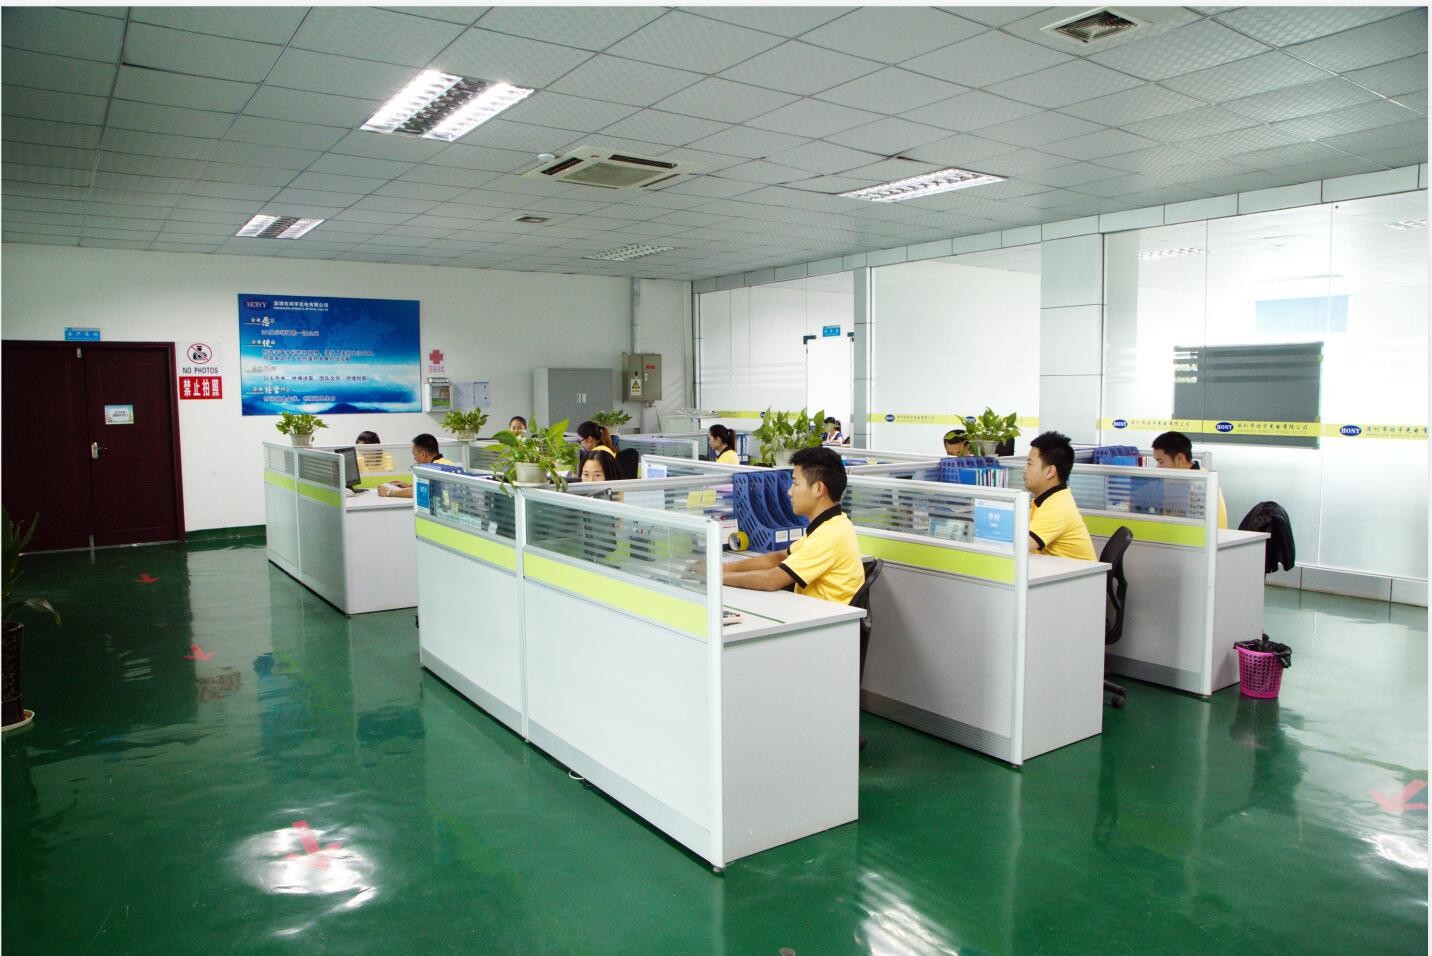 China Shenzhen HONY Optical Co., Limited Bedrijfsprofiel